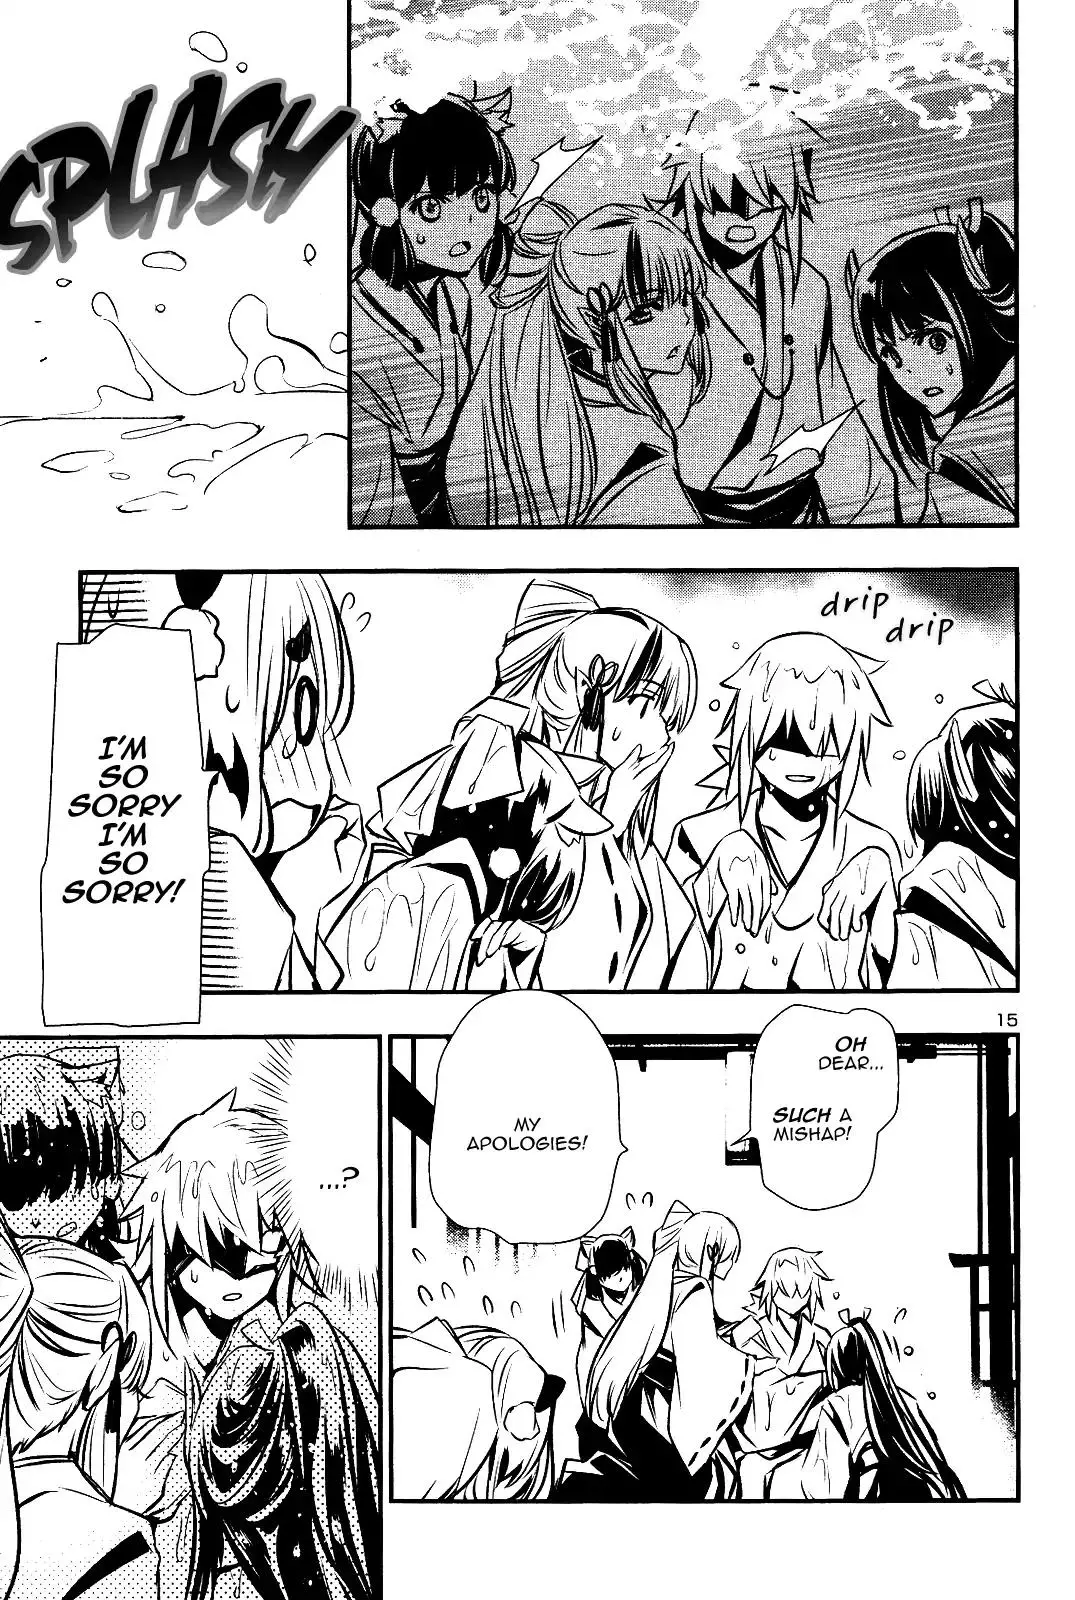 Shinju no Nectar - 25 page 13